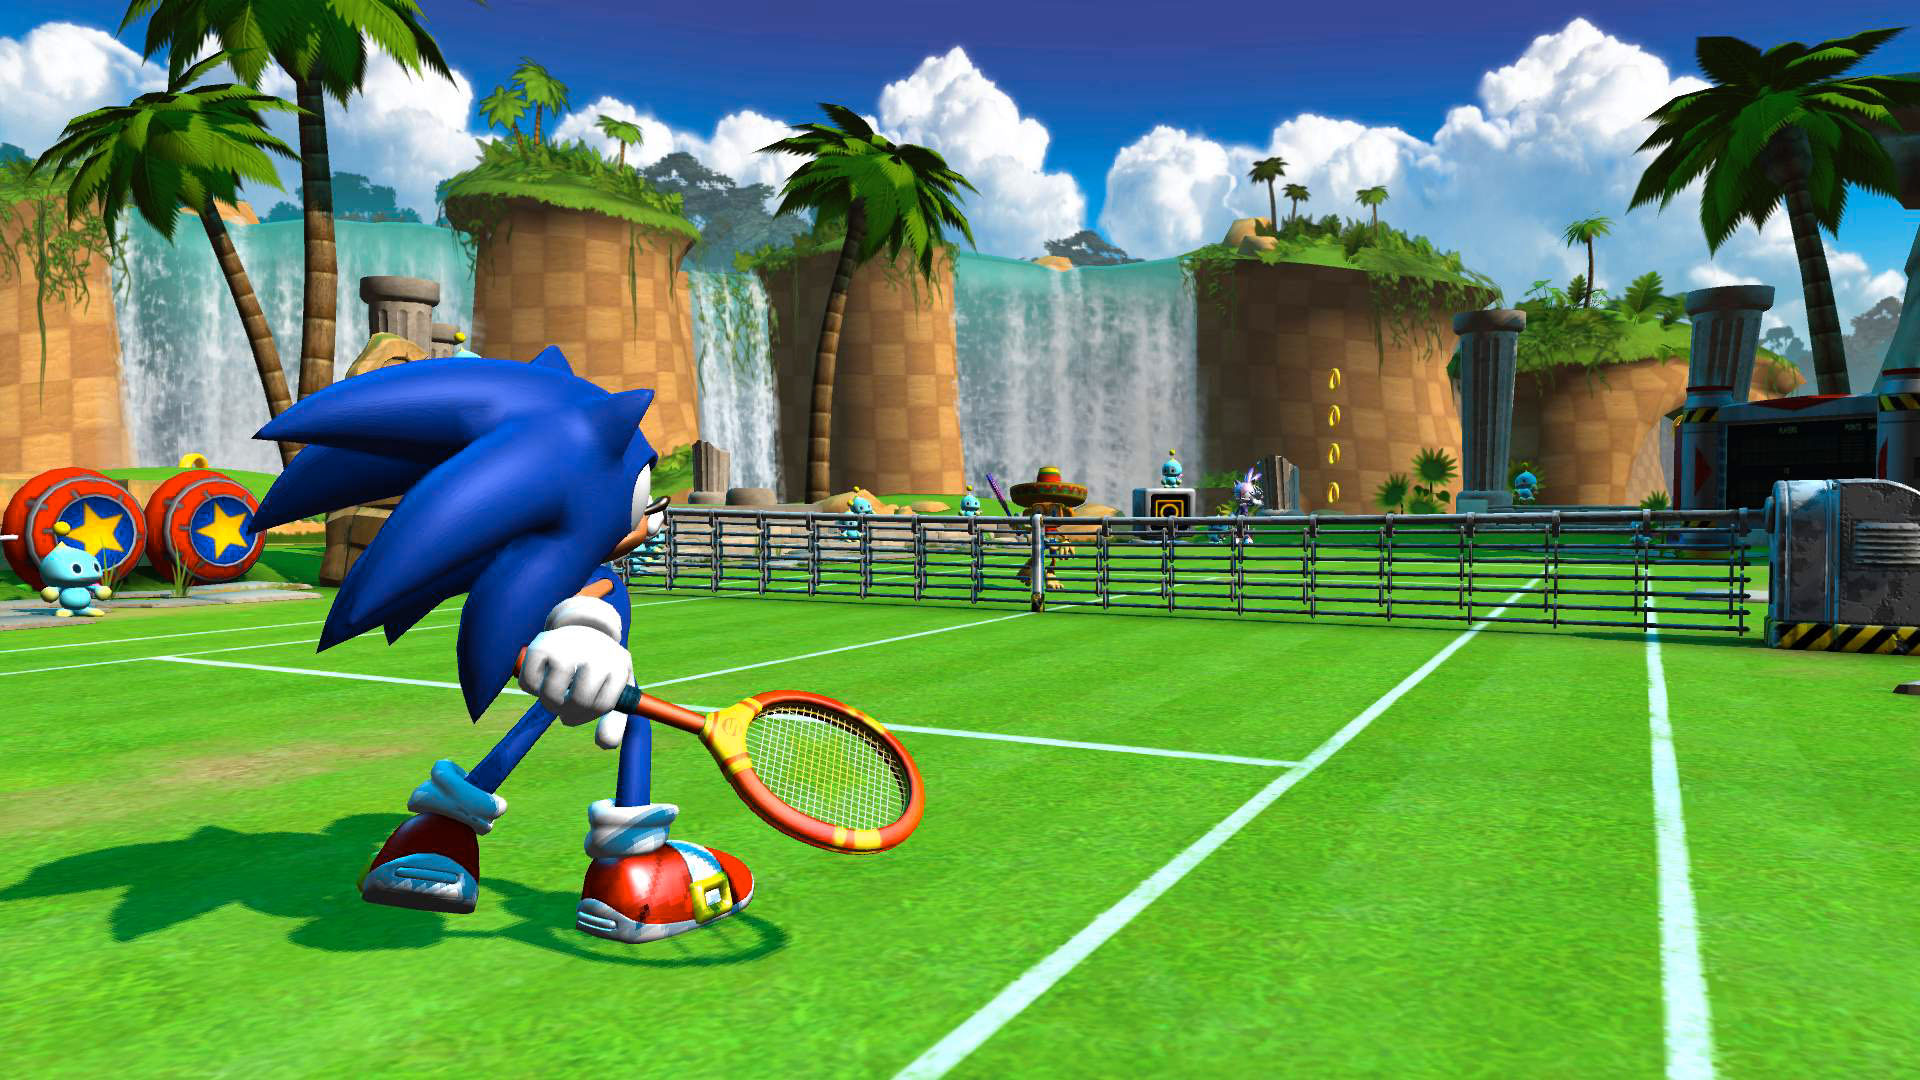 Jogo Sega SuperStar Tennis para Xbox 360 no Paraguai - Atacado Games -  Paraguay